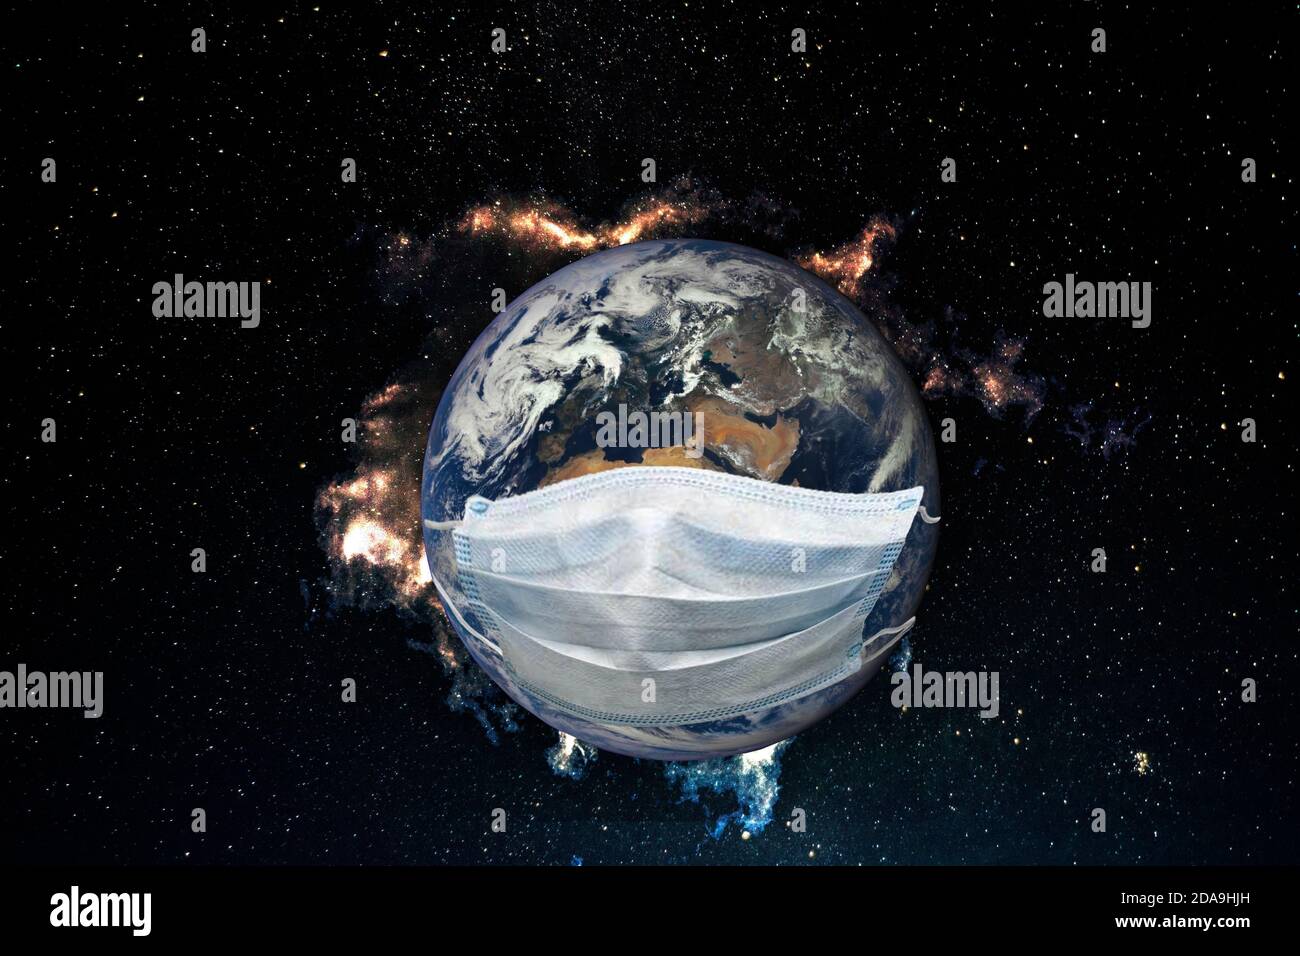 Planet Erde ist krank mit einem Virus. Medizinische Maske auf der Erde. Elemente dieses Bildes, die von der NASA eingerichtet wurden. Stockfoto